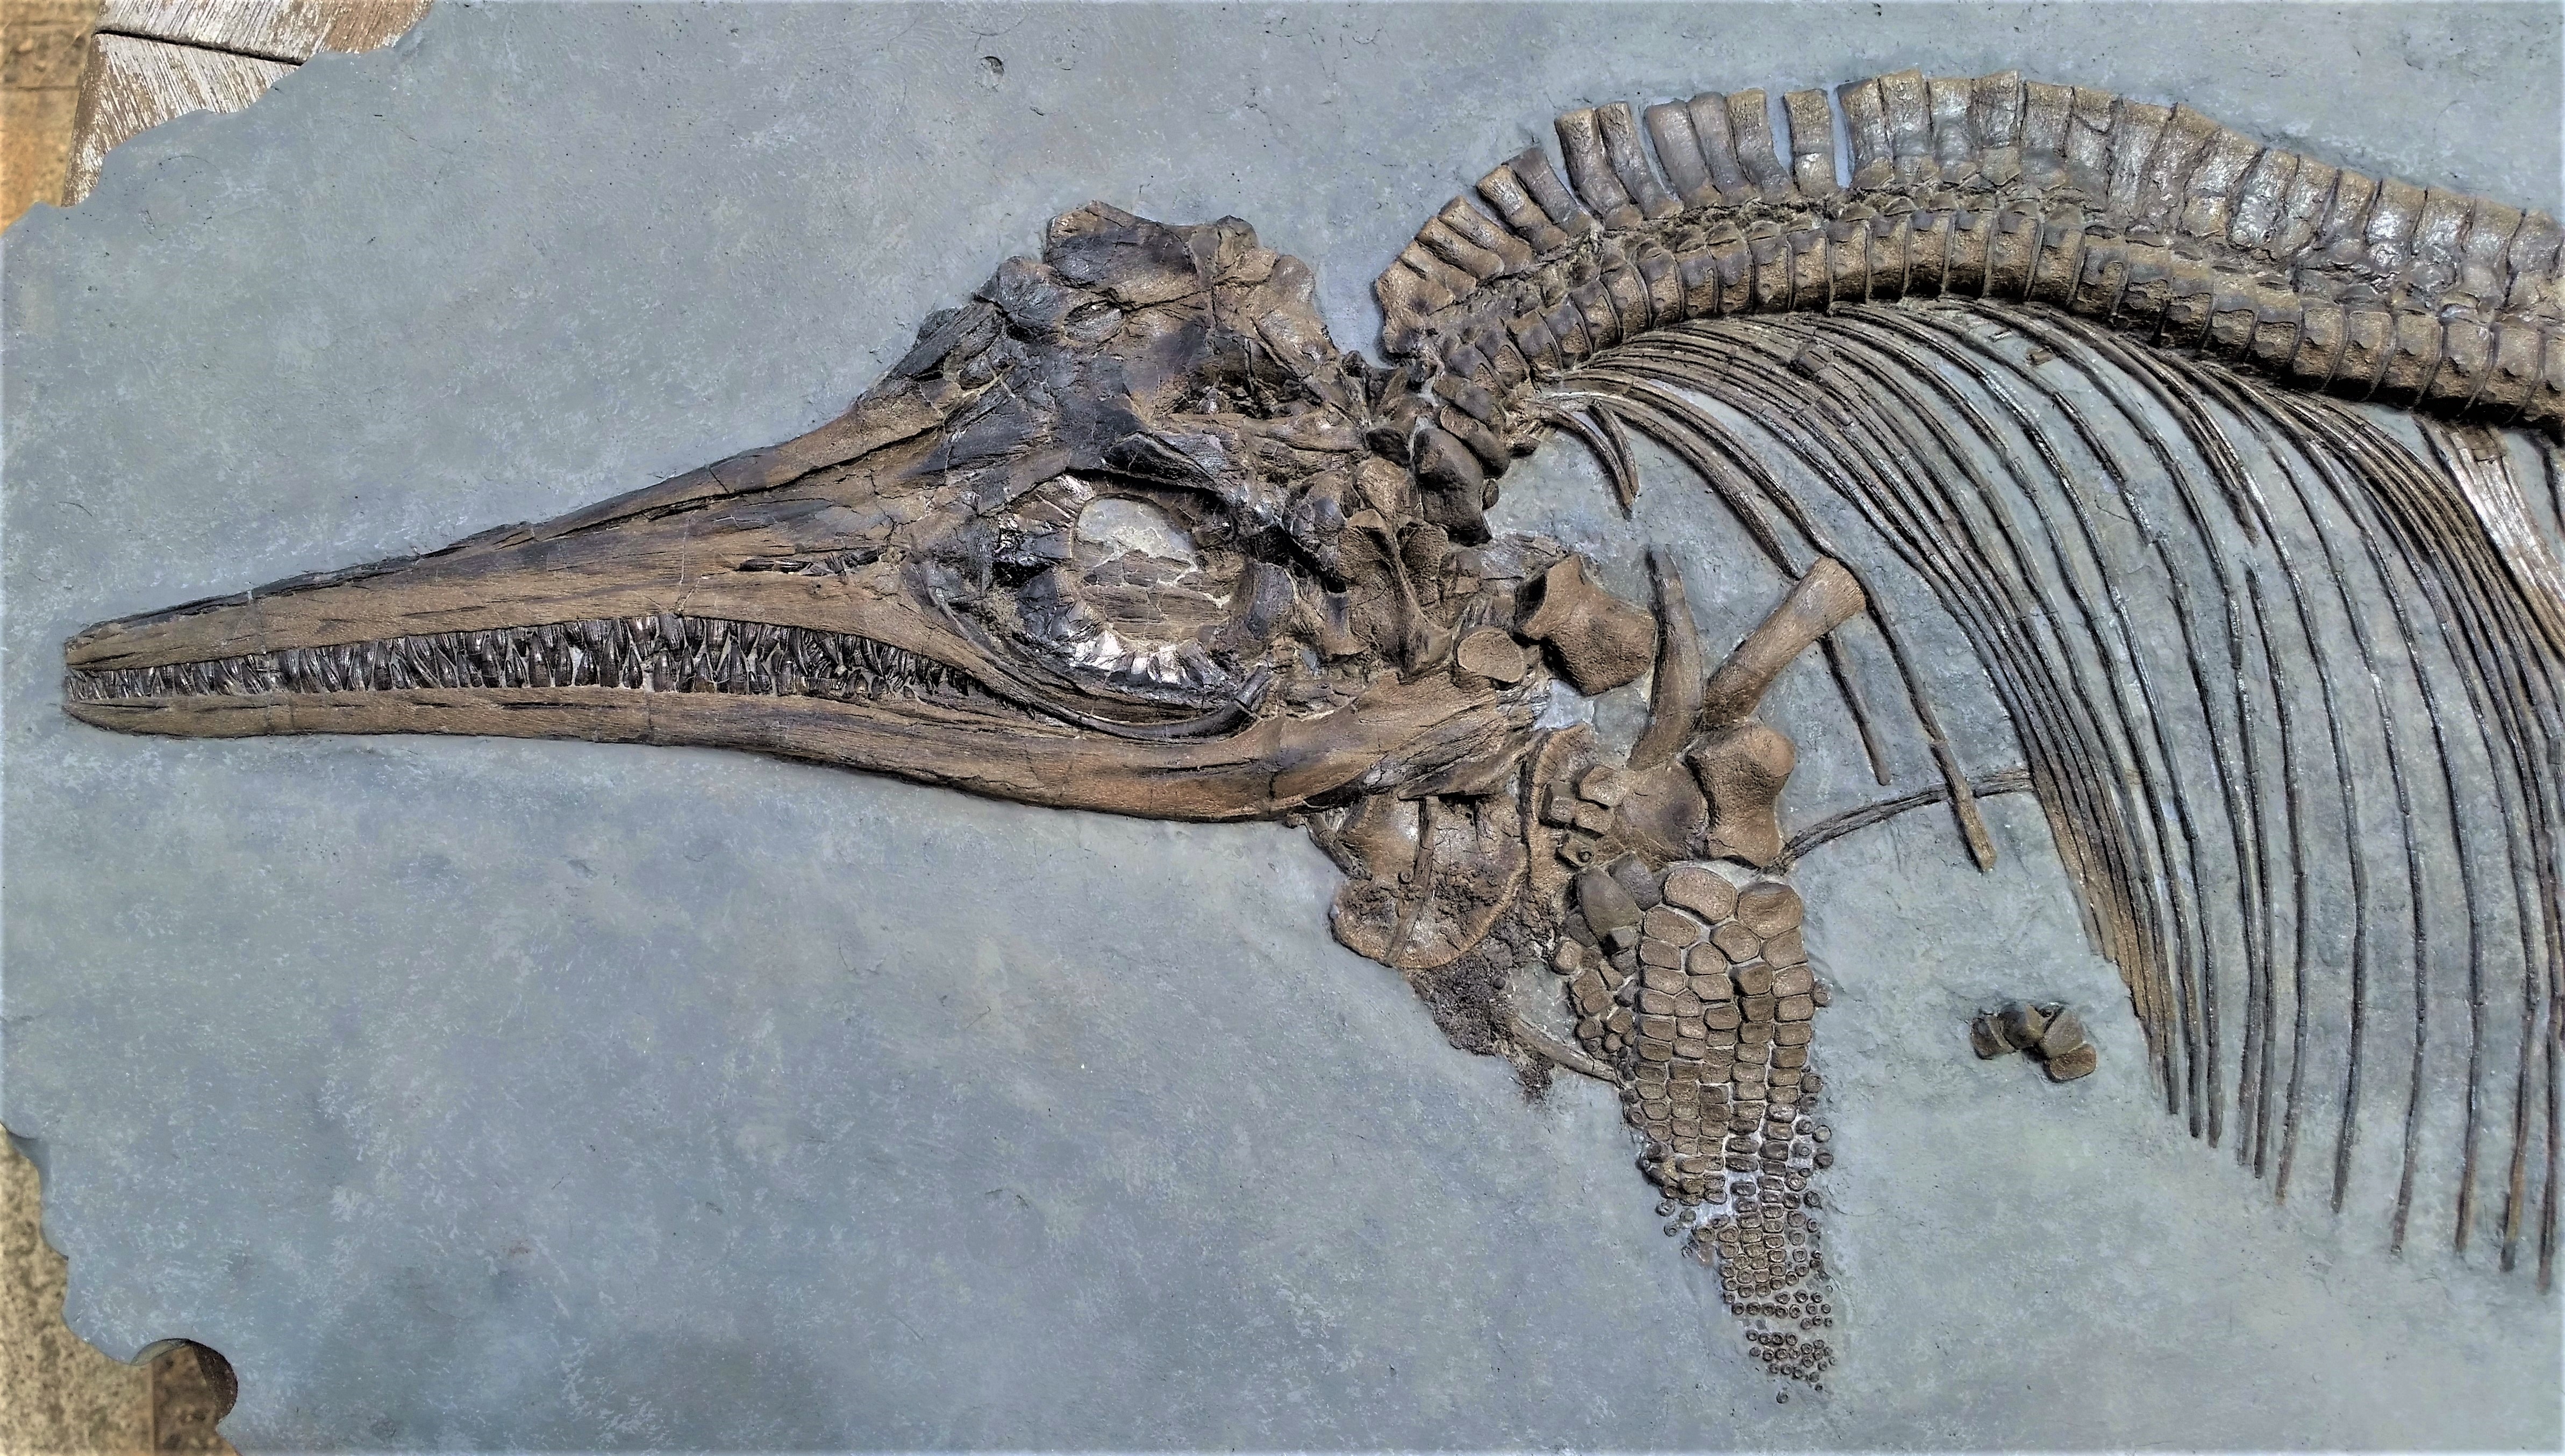  A खोजकर्ता एक Ichthyosaurus जीवाश्म की खोज करते हुए।